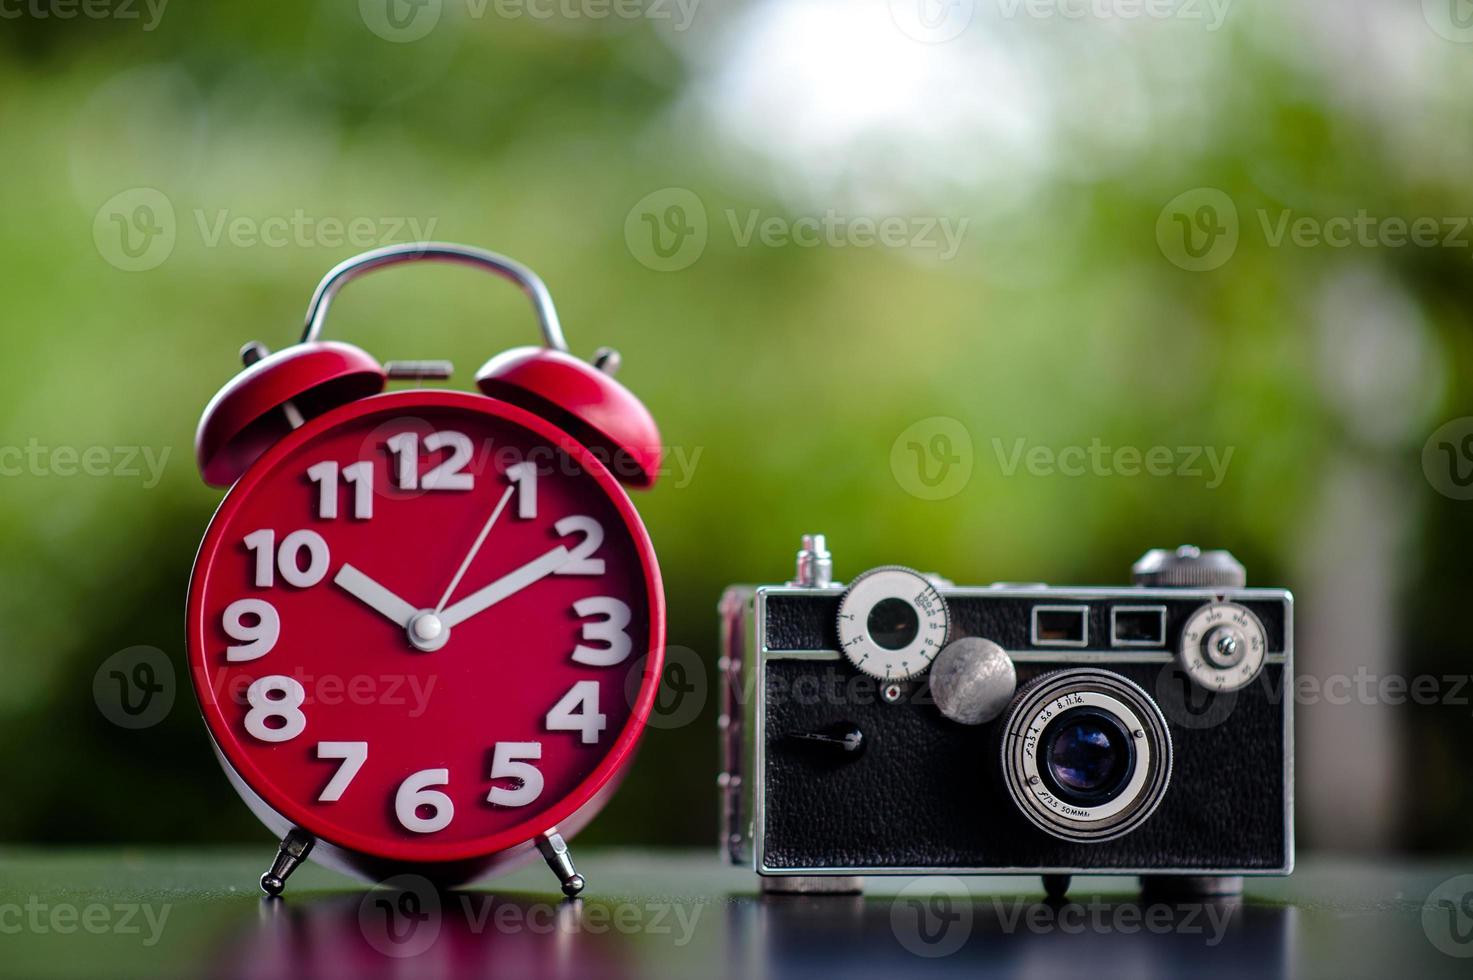 l'orologio rosso e la fotocamera mettono sul tavolo i concetti di puntualità e fotografia dell'attrezzatura per le riprese foto